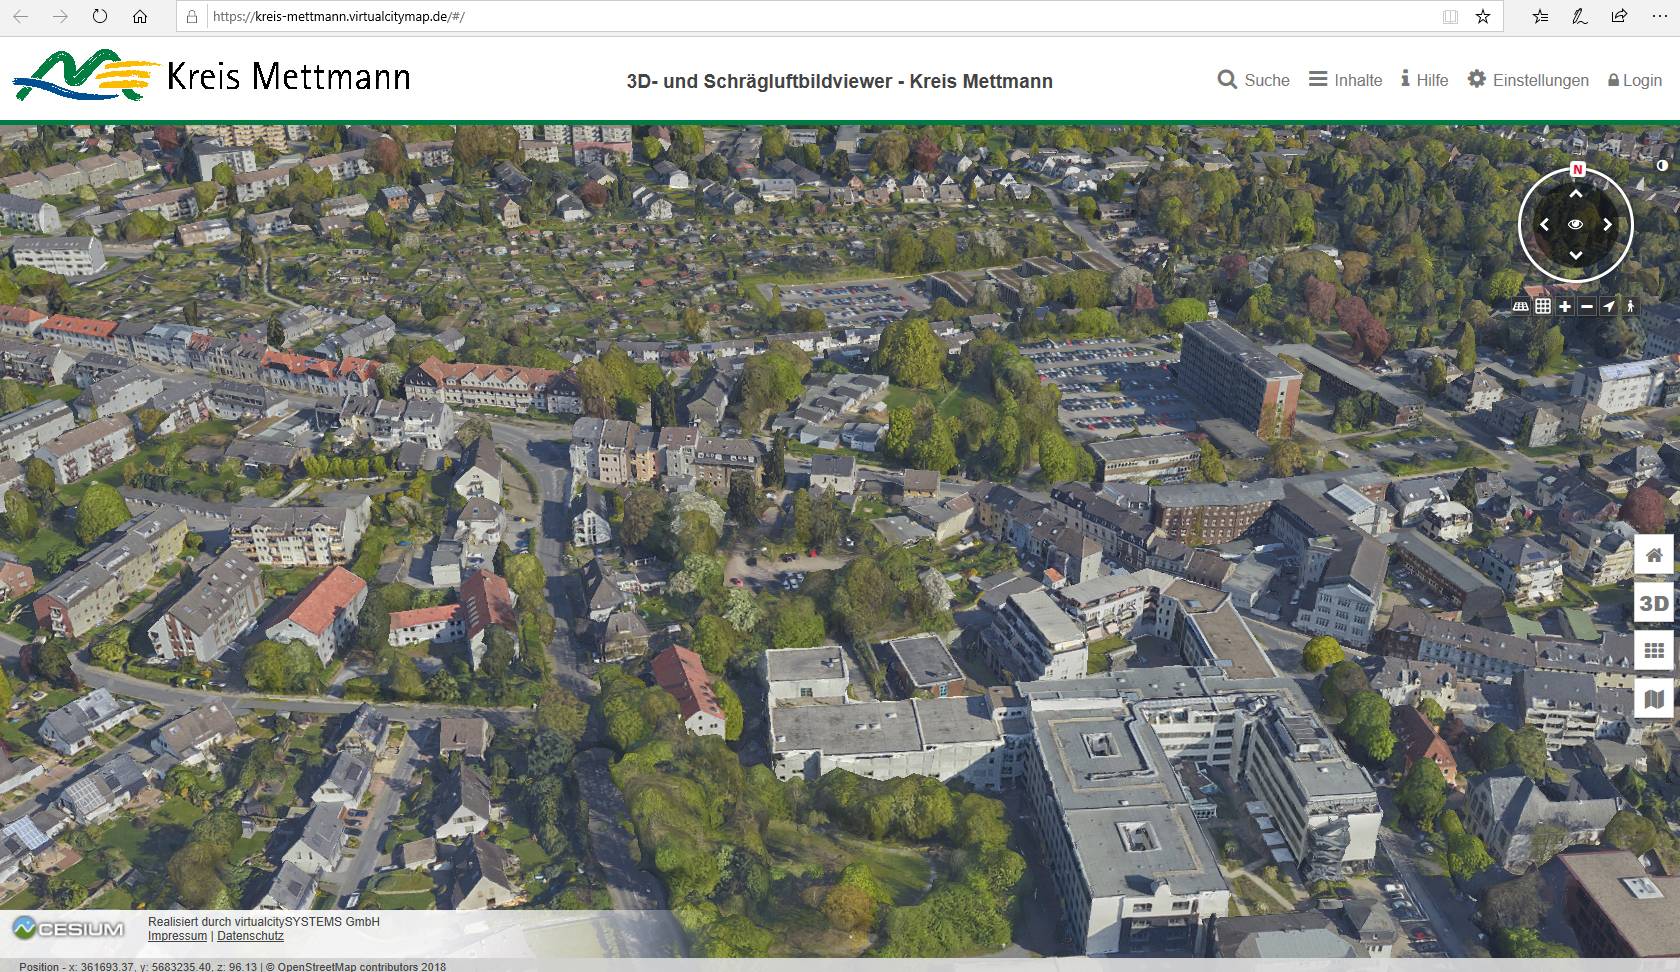 Luftbild vom Kreis Mettmann.